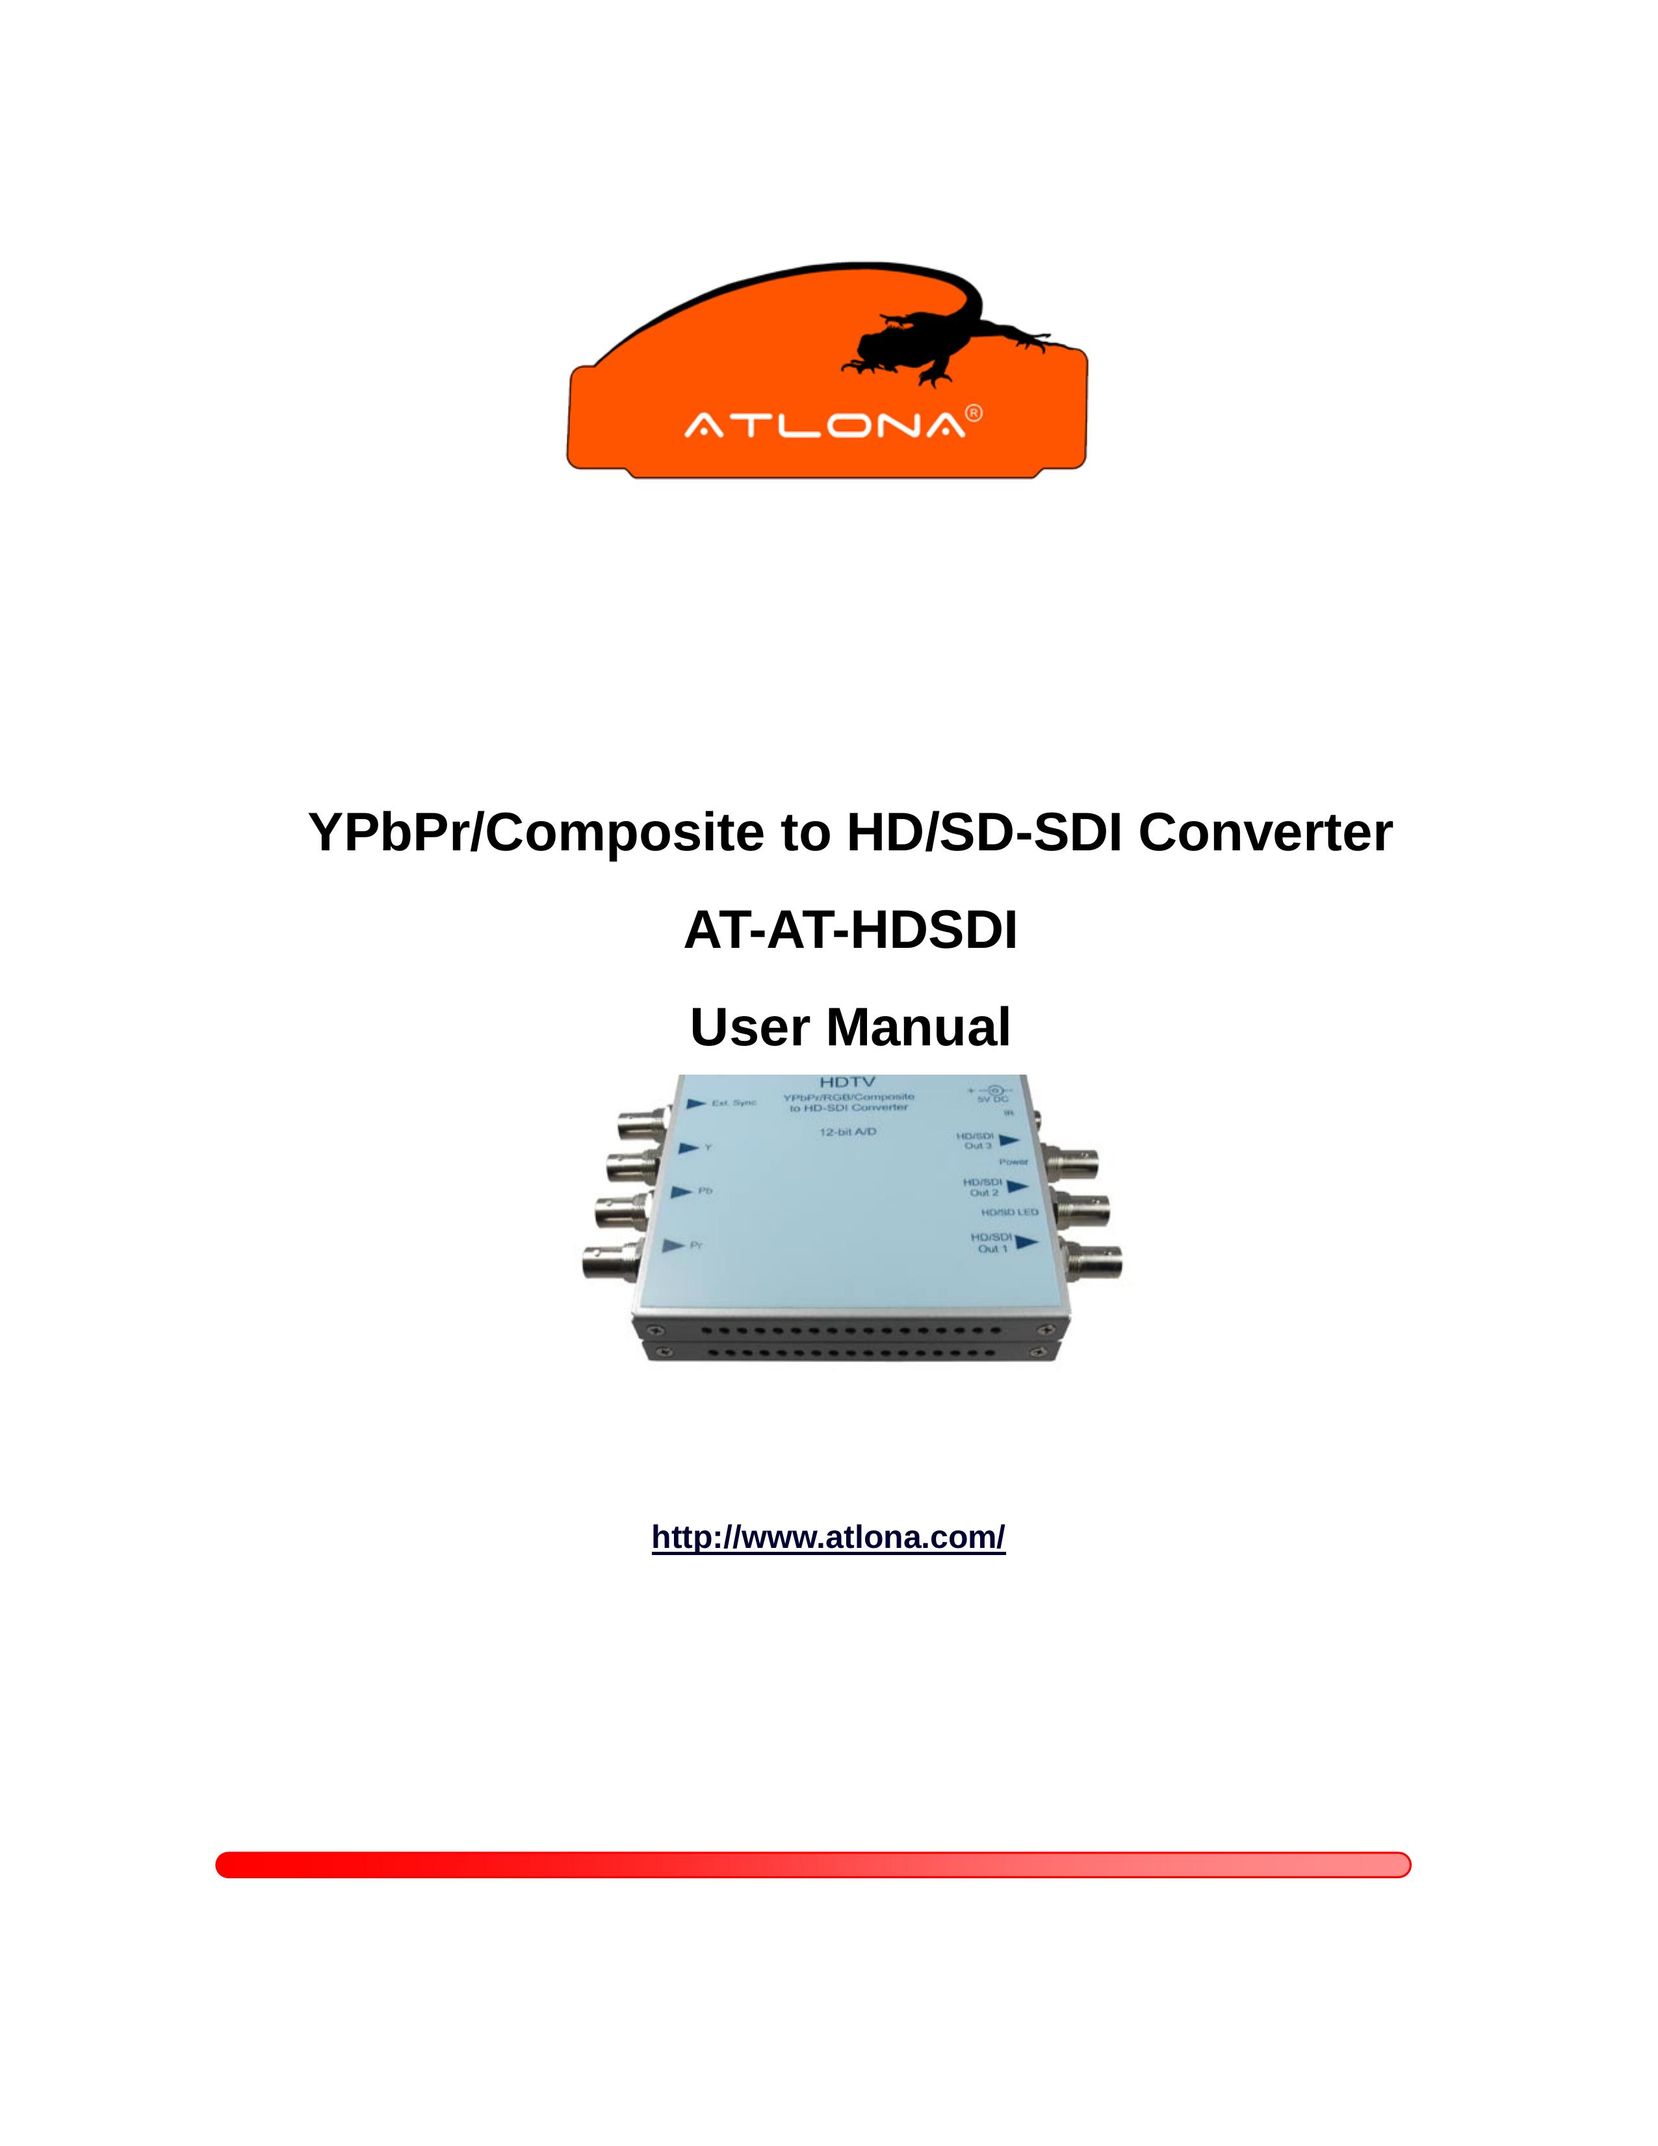 Atlona AT-AT-HDSDI TV Converter Box User Manual